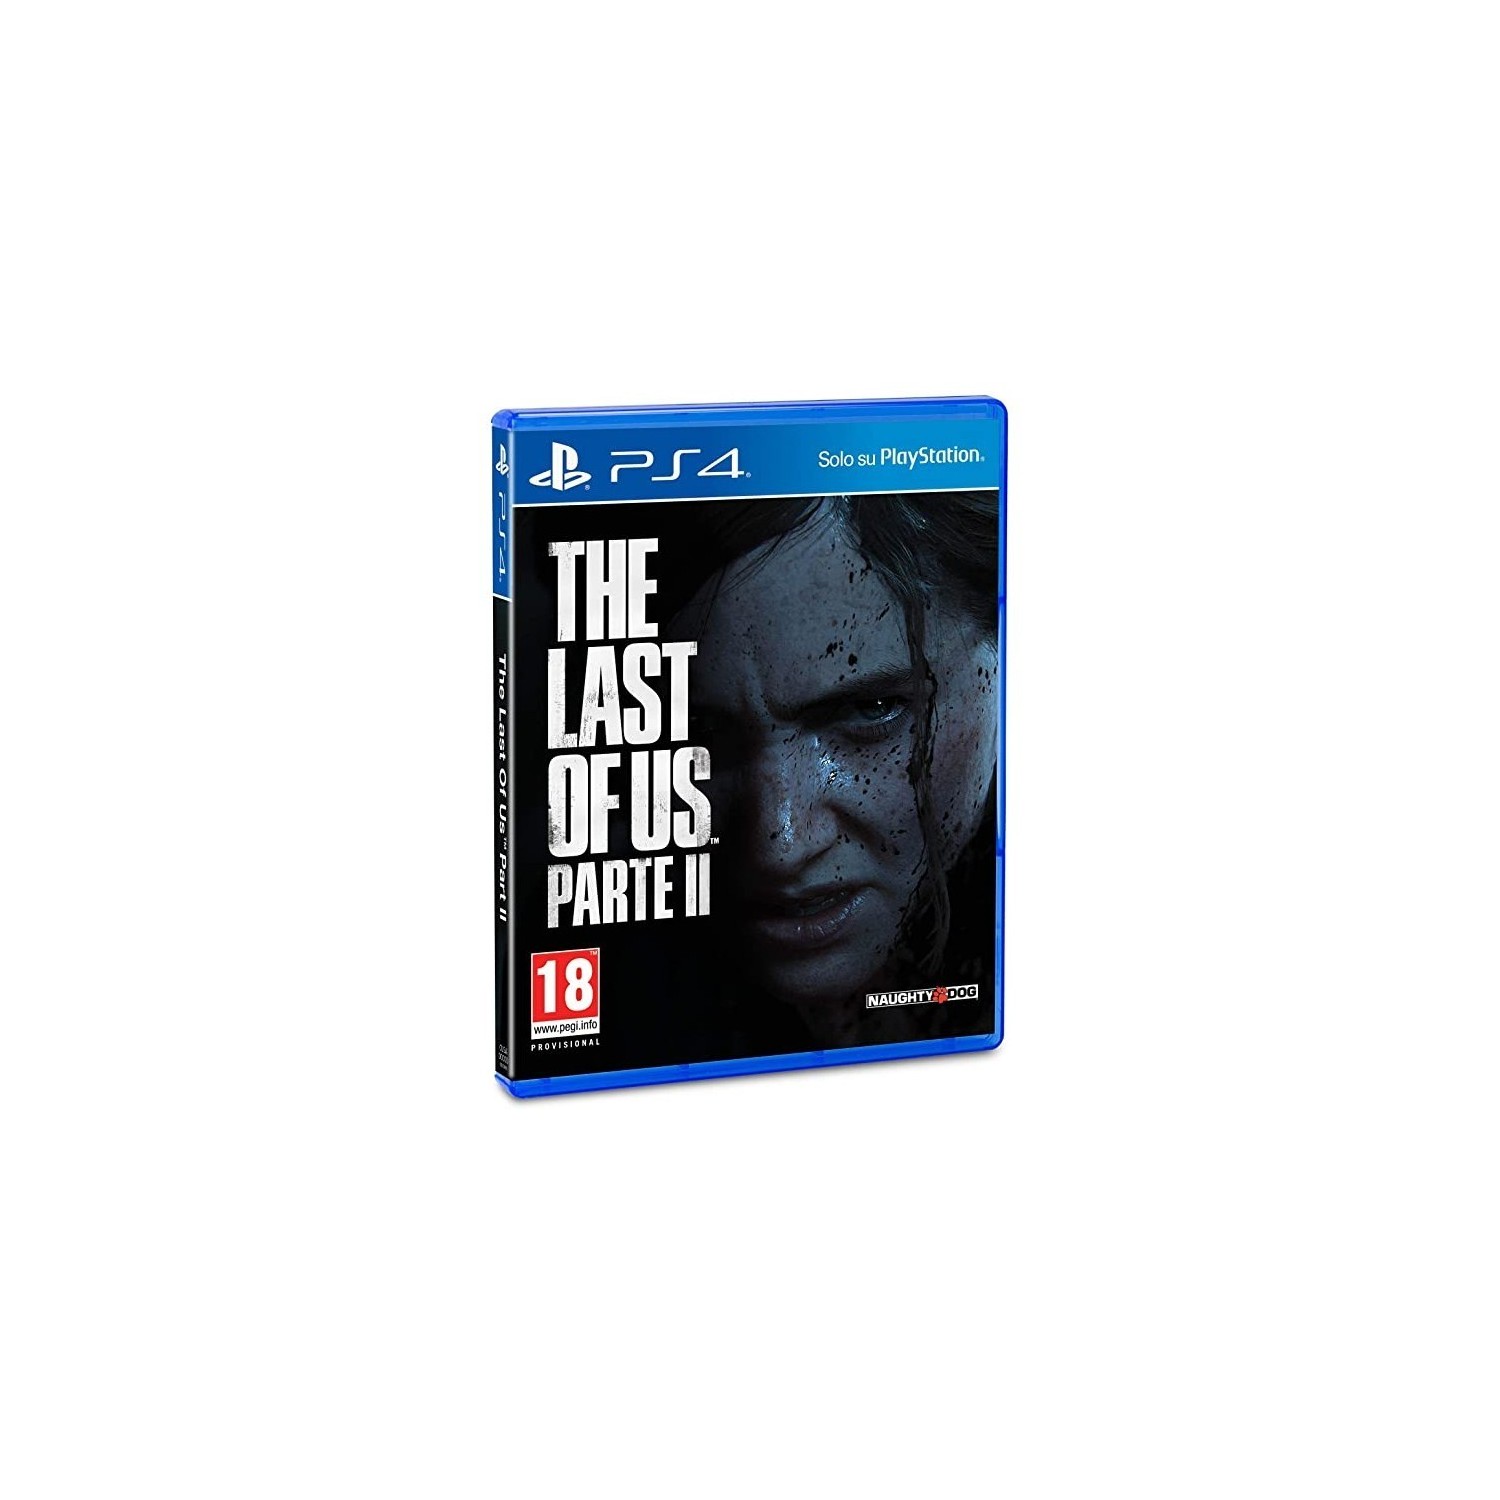 Vendita online Home The Last Of Us Parte II PS4 costo  34,99 €  spedizione in 24h-48h pagmamento PayPal Contrassegno